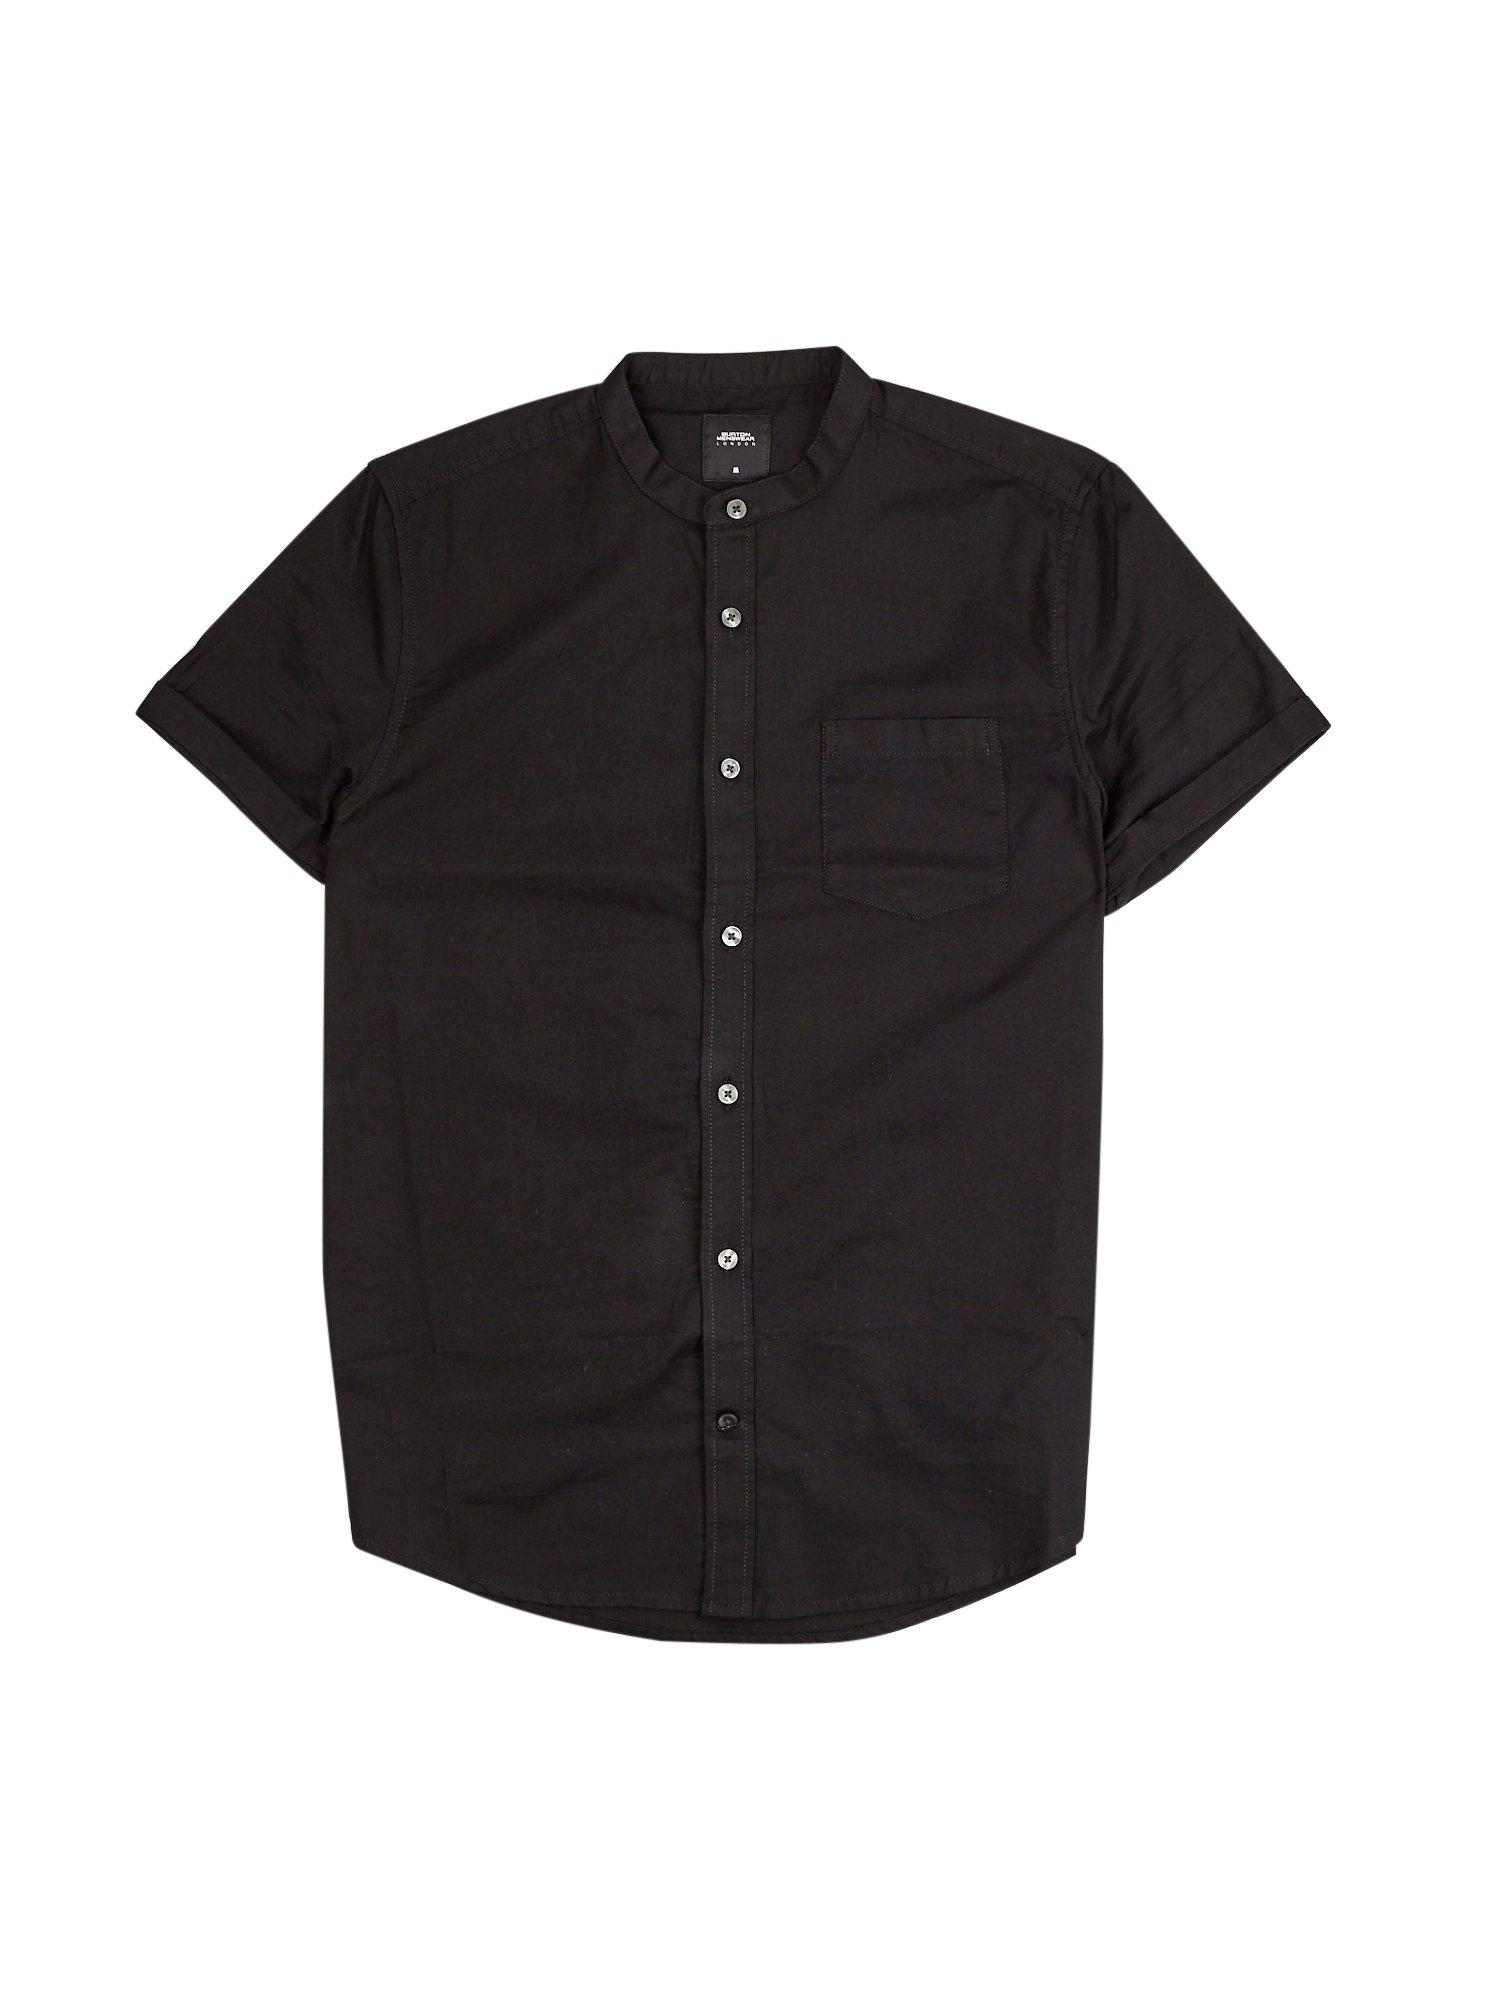 Black Short Sleeve Grandad Oxford Shirt | Burton UK